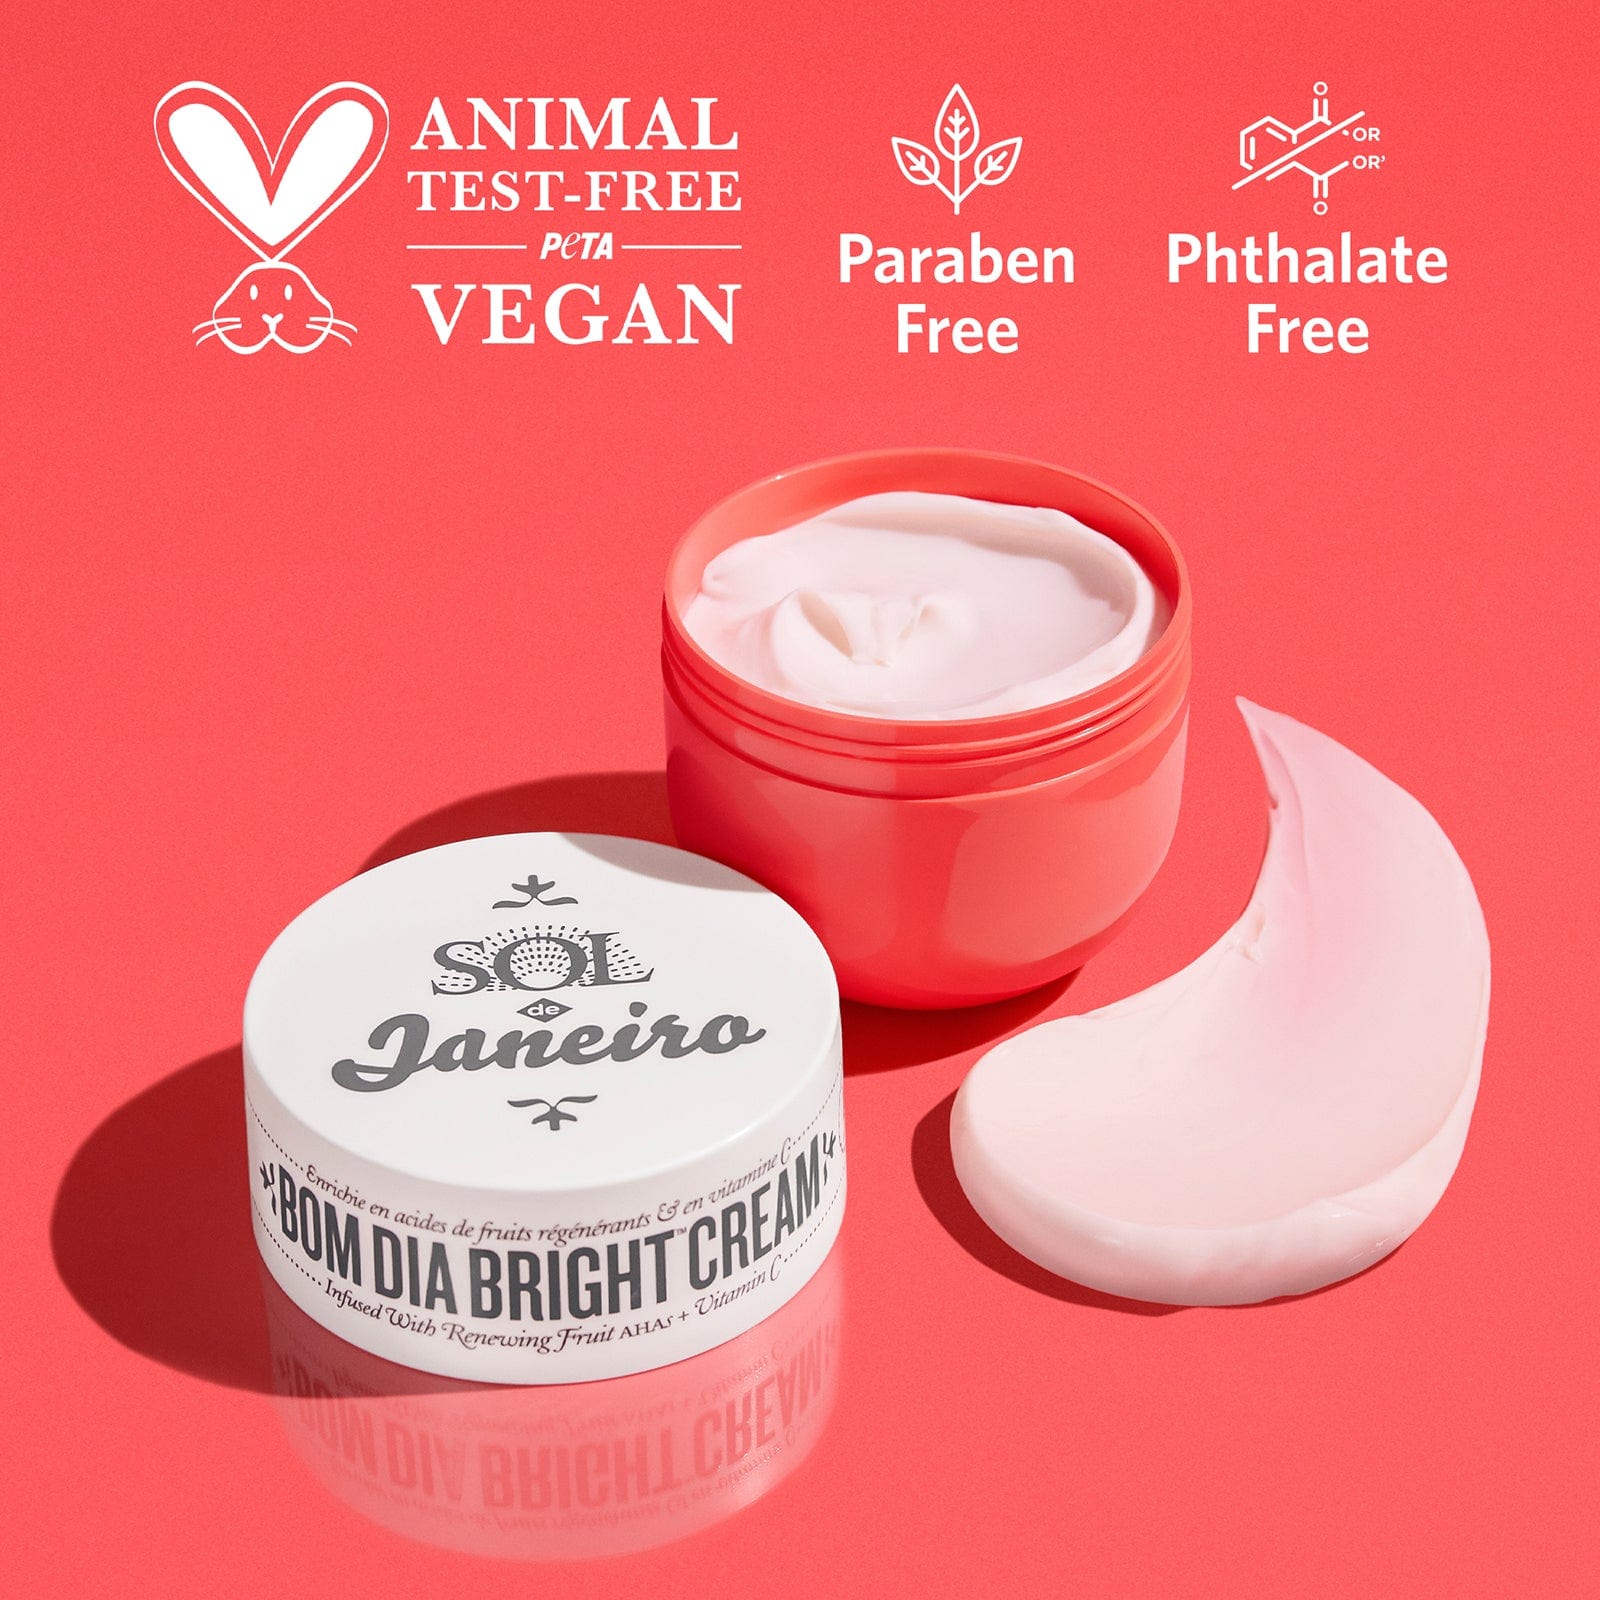 peta certified Animal test-free - vegan - paraben free - phthalate free